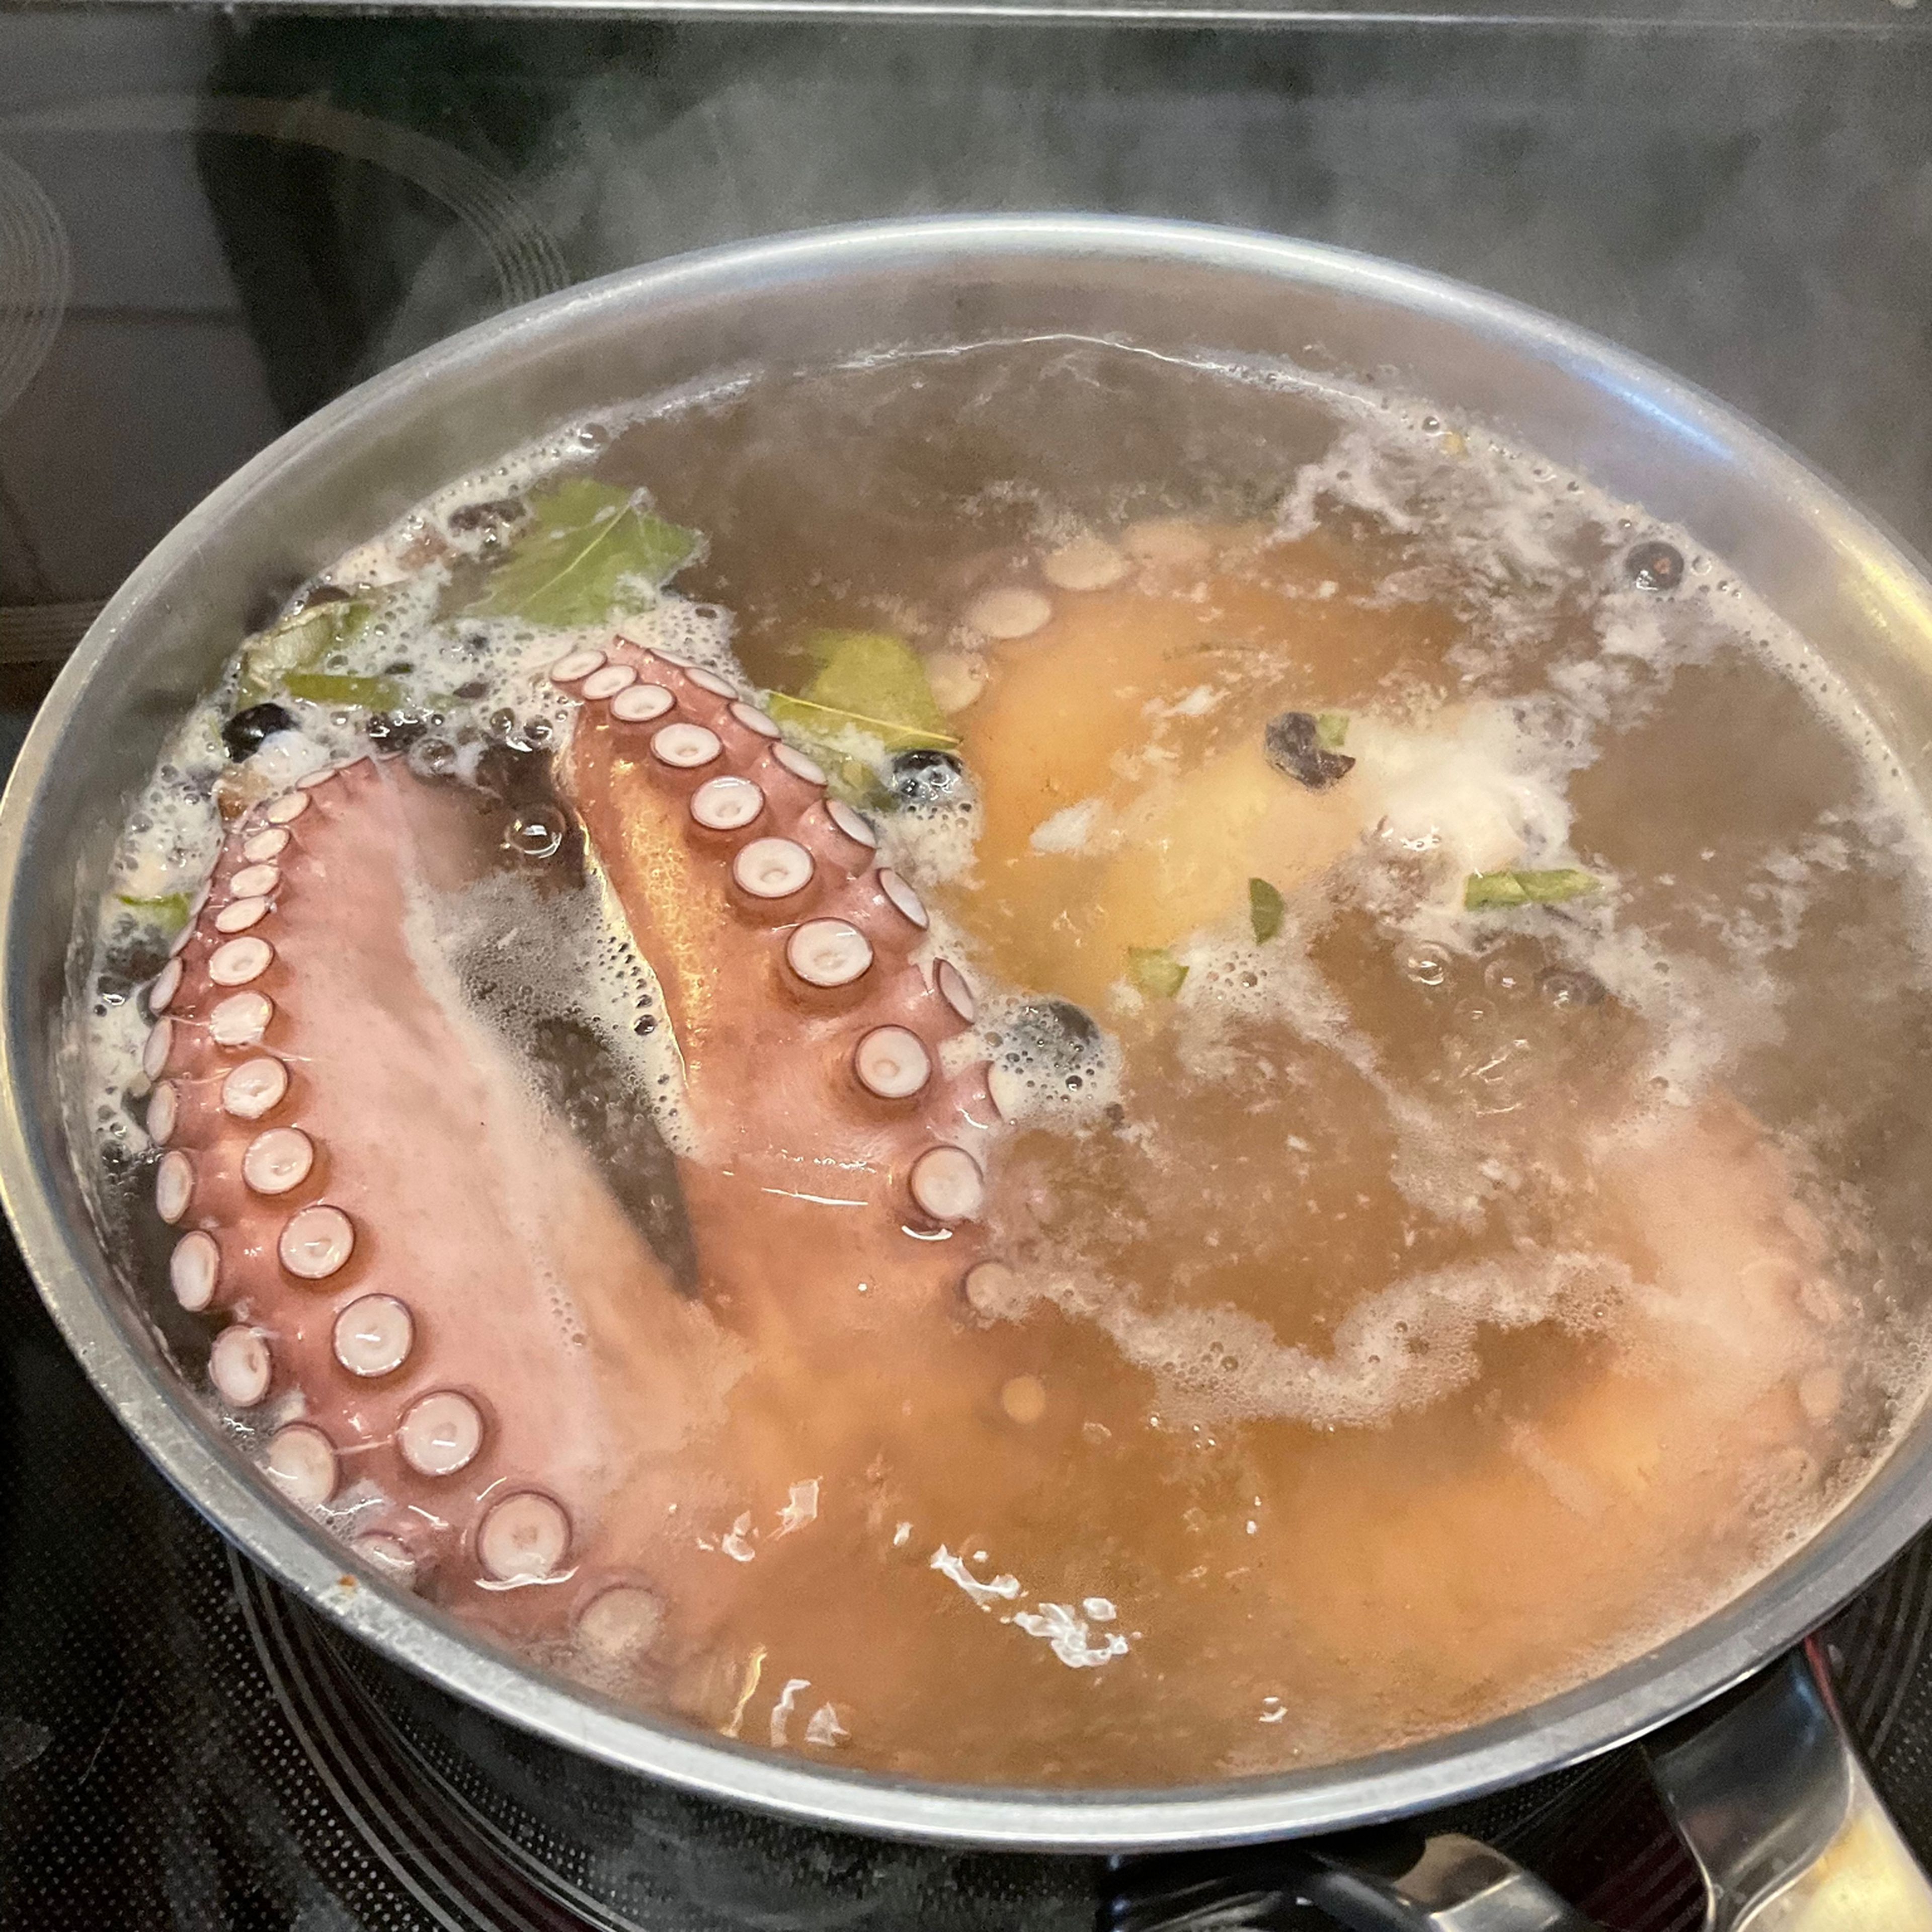 Nach dem aufkochen den Pulpo nur leicht simmern/köcheln lassen. Meine Pulpotentakeln vom Lidl ( gibts immer tiefgefroren wenn „griechische Tage“) dauern ca. 50 Minuten, ein ganzer Octopuss kann je nach Größe und Gewicht 1 1/2 bis 2 h dauern bis er weich wird. Auch wenn ich mich wiederhole (siehe andere Pulporezepte) der Octopuss wird nicht durch weichschlagen oder Kork mit kochen butterzart, sondern nur durch Essig und simmern. Entweder mit nem Zahnstocker testen oder ein stück kosten.